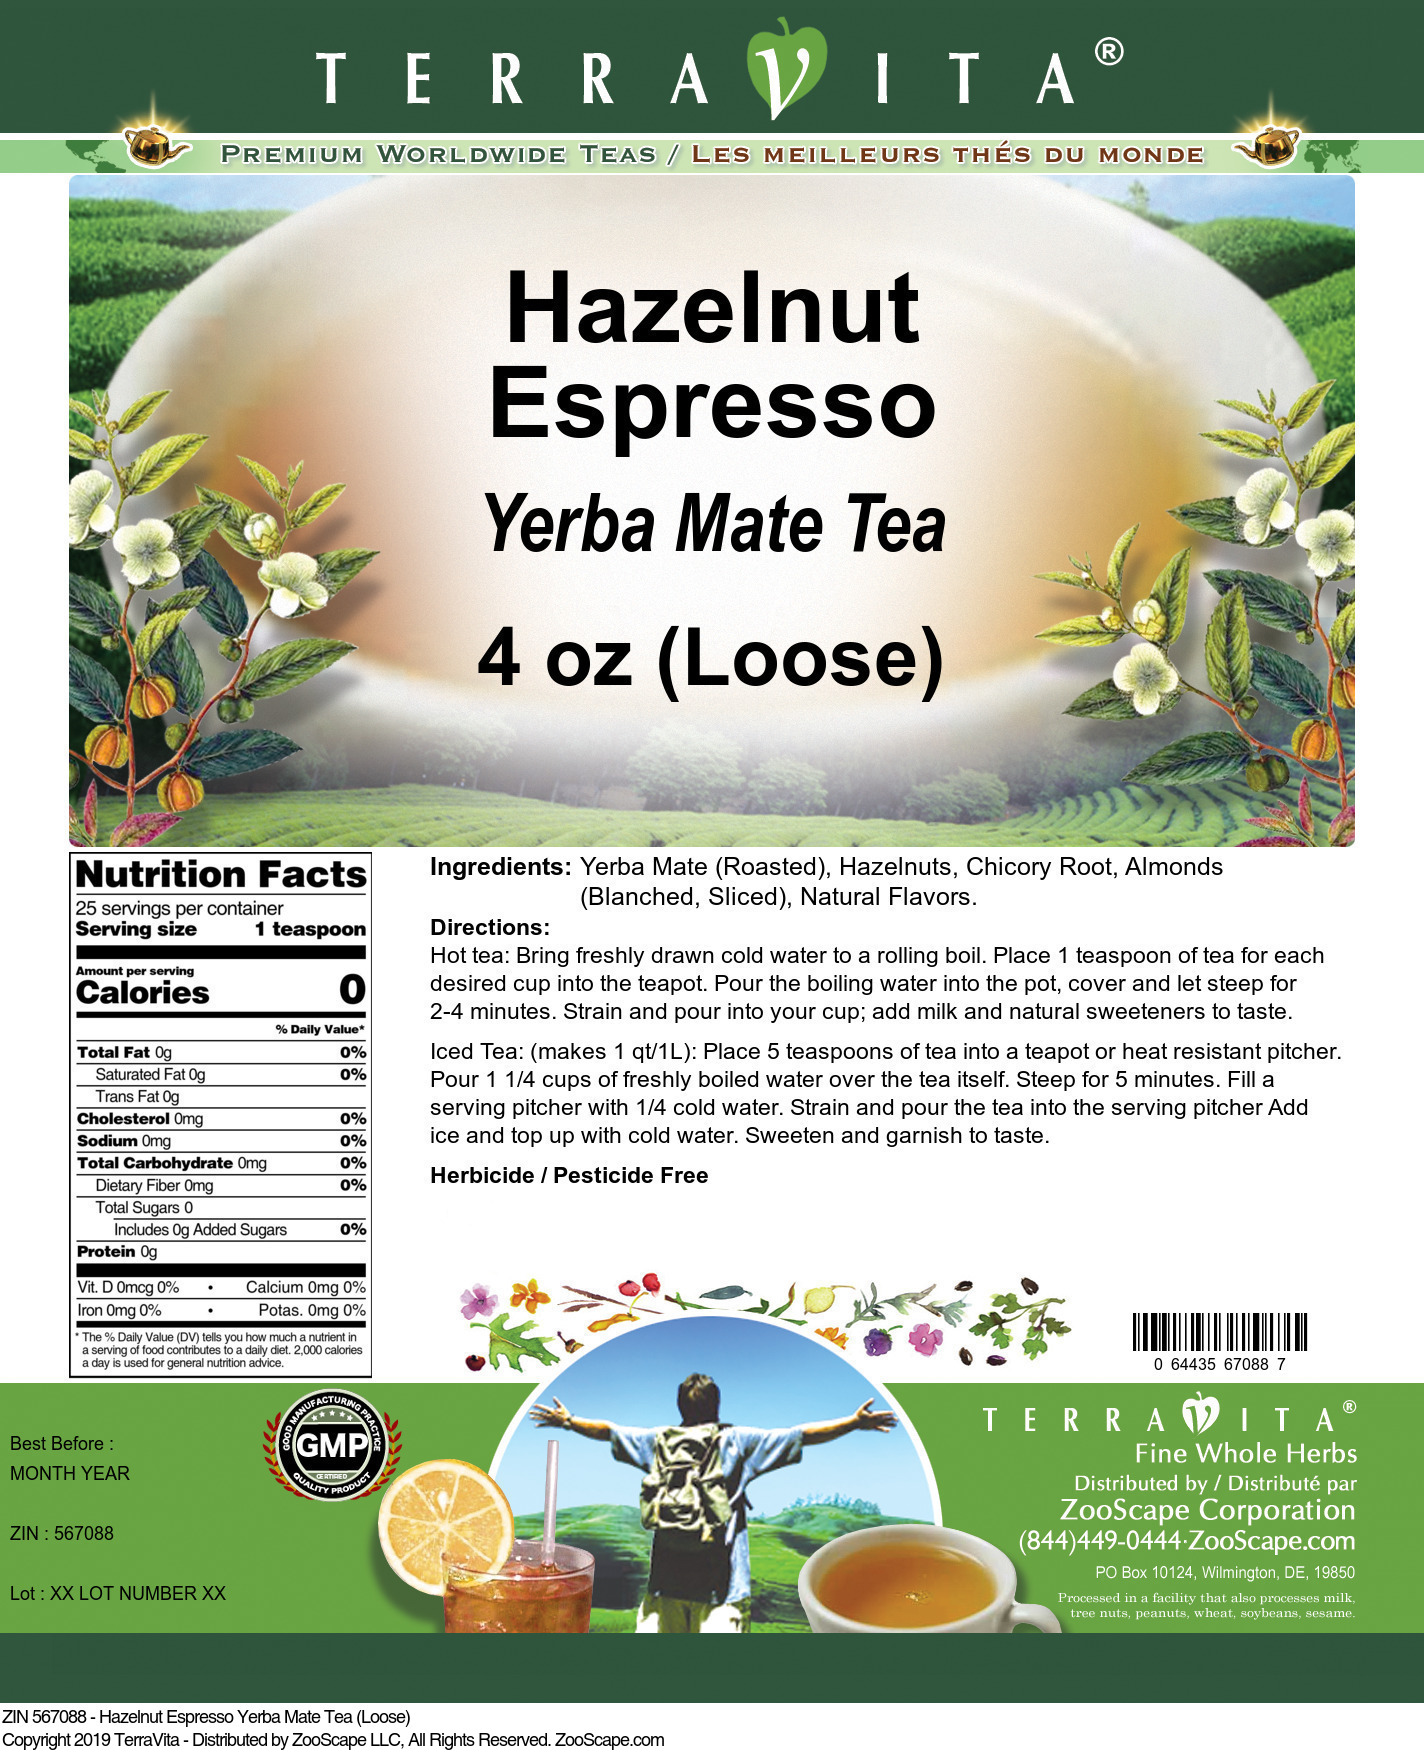 Hazelnut Espresso Yerba Mate Tea (Loose) - Label